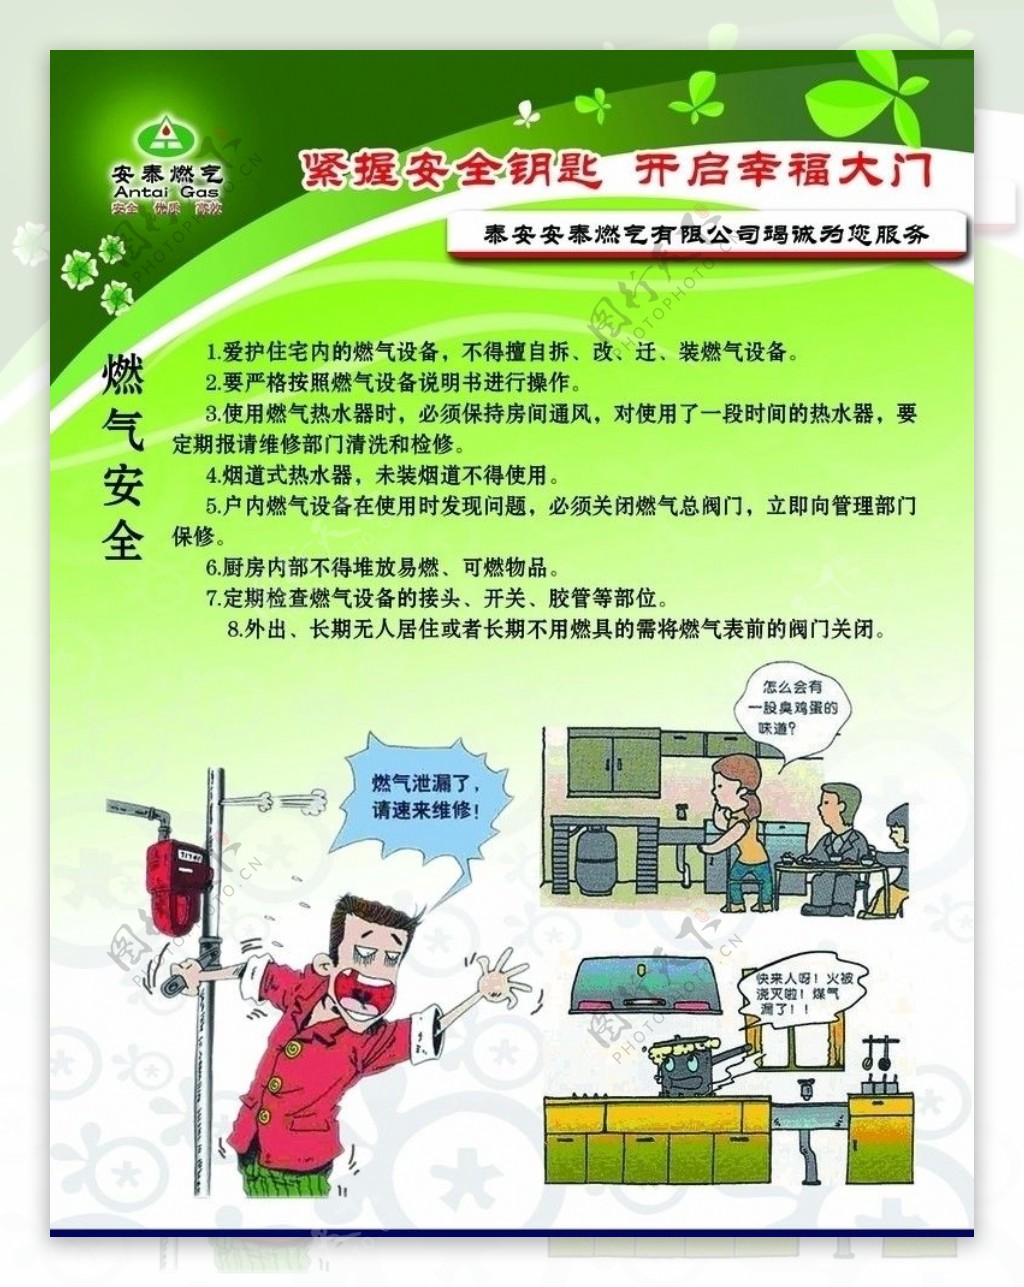 燃气安全使用防止煤气中毒漫画展板设计图片